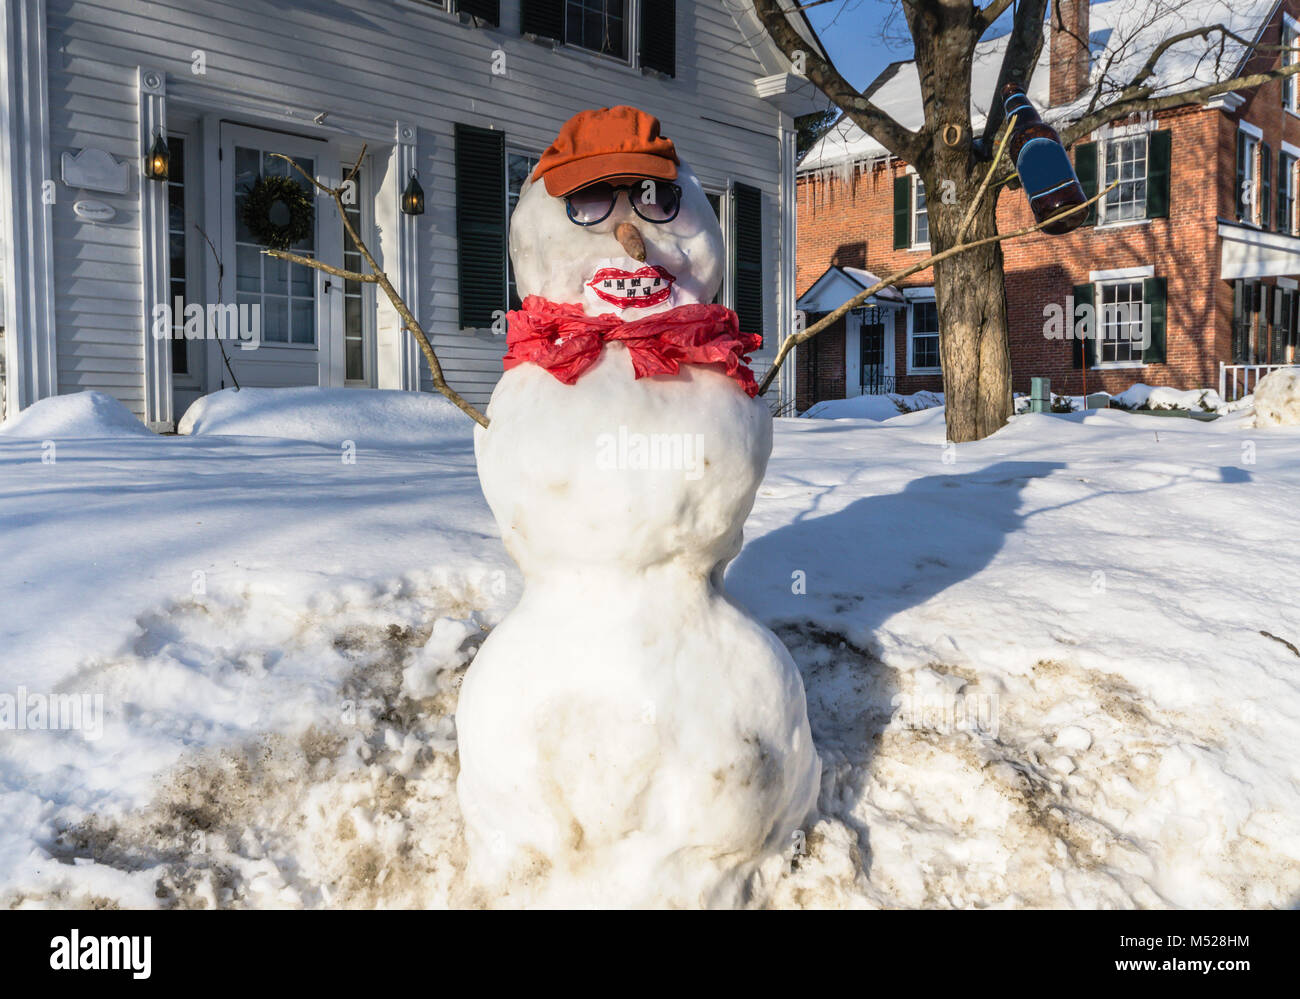 Divertente pupazzo di neve adornata con bucktooth sorriso, cappello da baseball e bottiglia di birra. Foto Stock